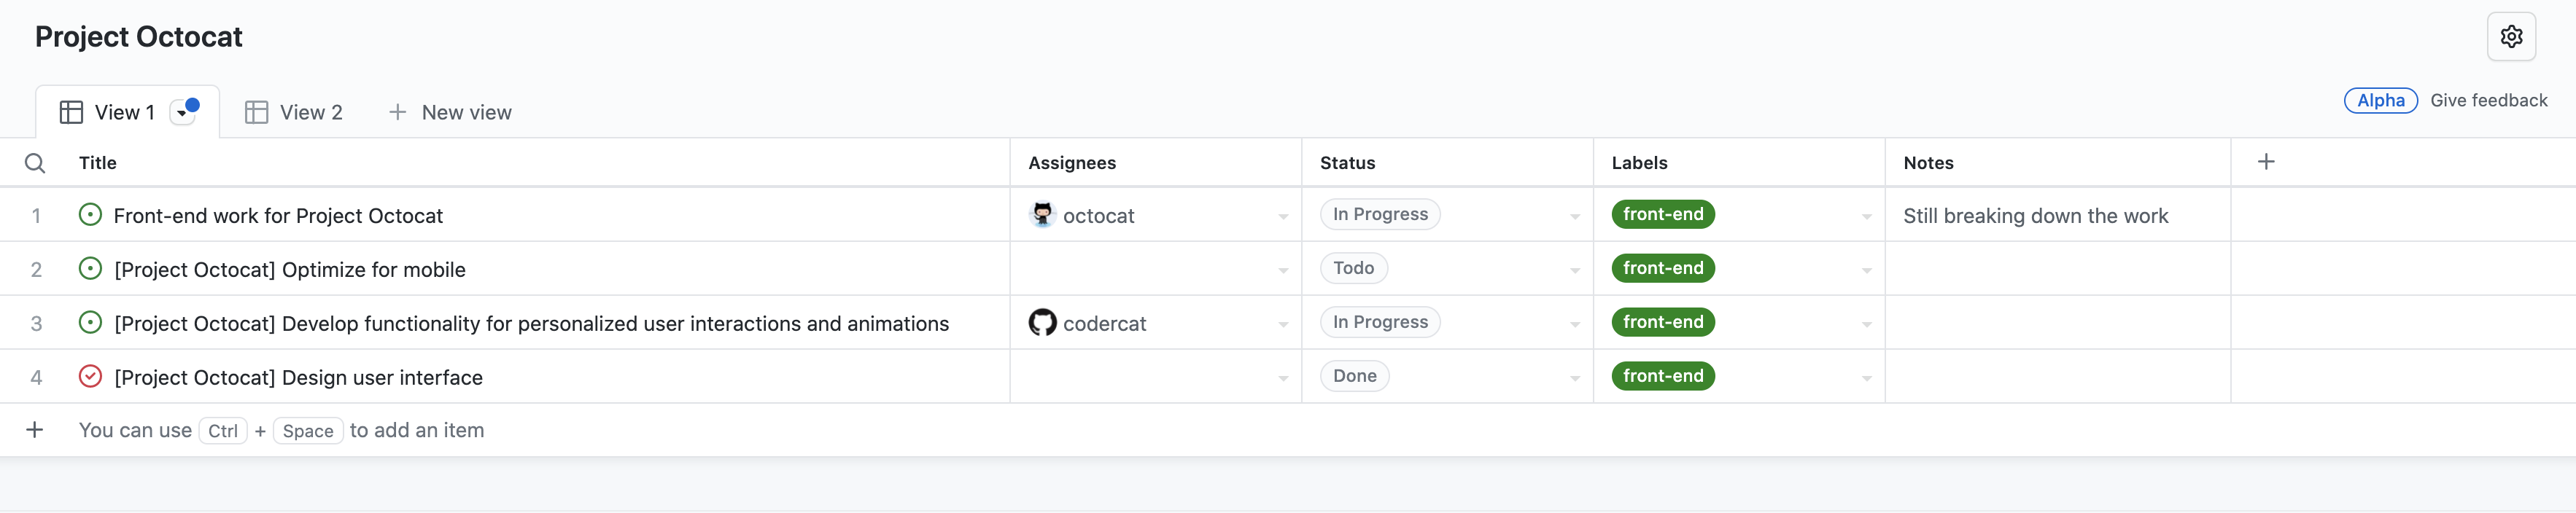 Captura de tela da exibição de tabela do projeto "Projeto Octocat", contendo uma lista de problemas, com colunas para "Título", "Destinatários", "Status", "Rótulos" e "Observações".